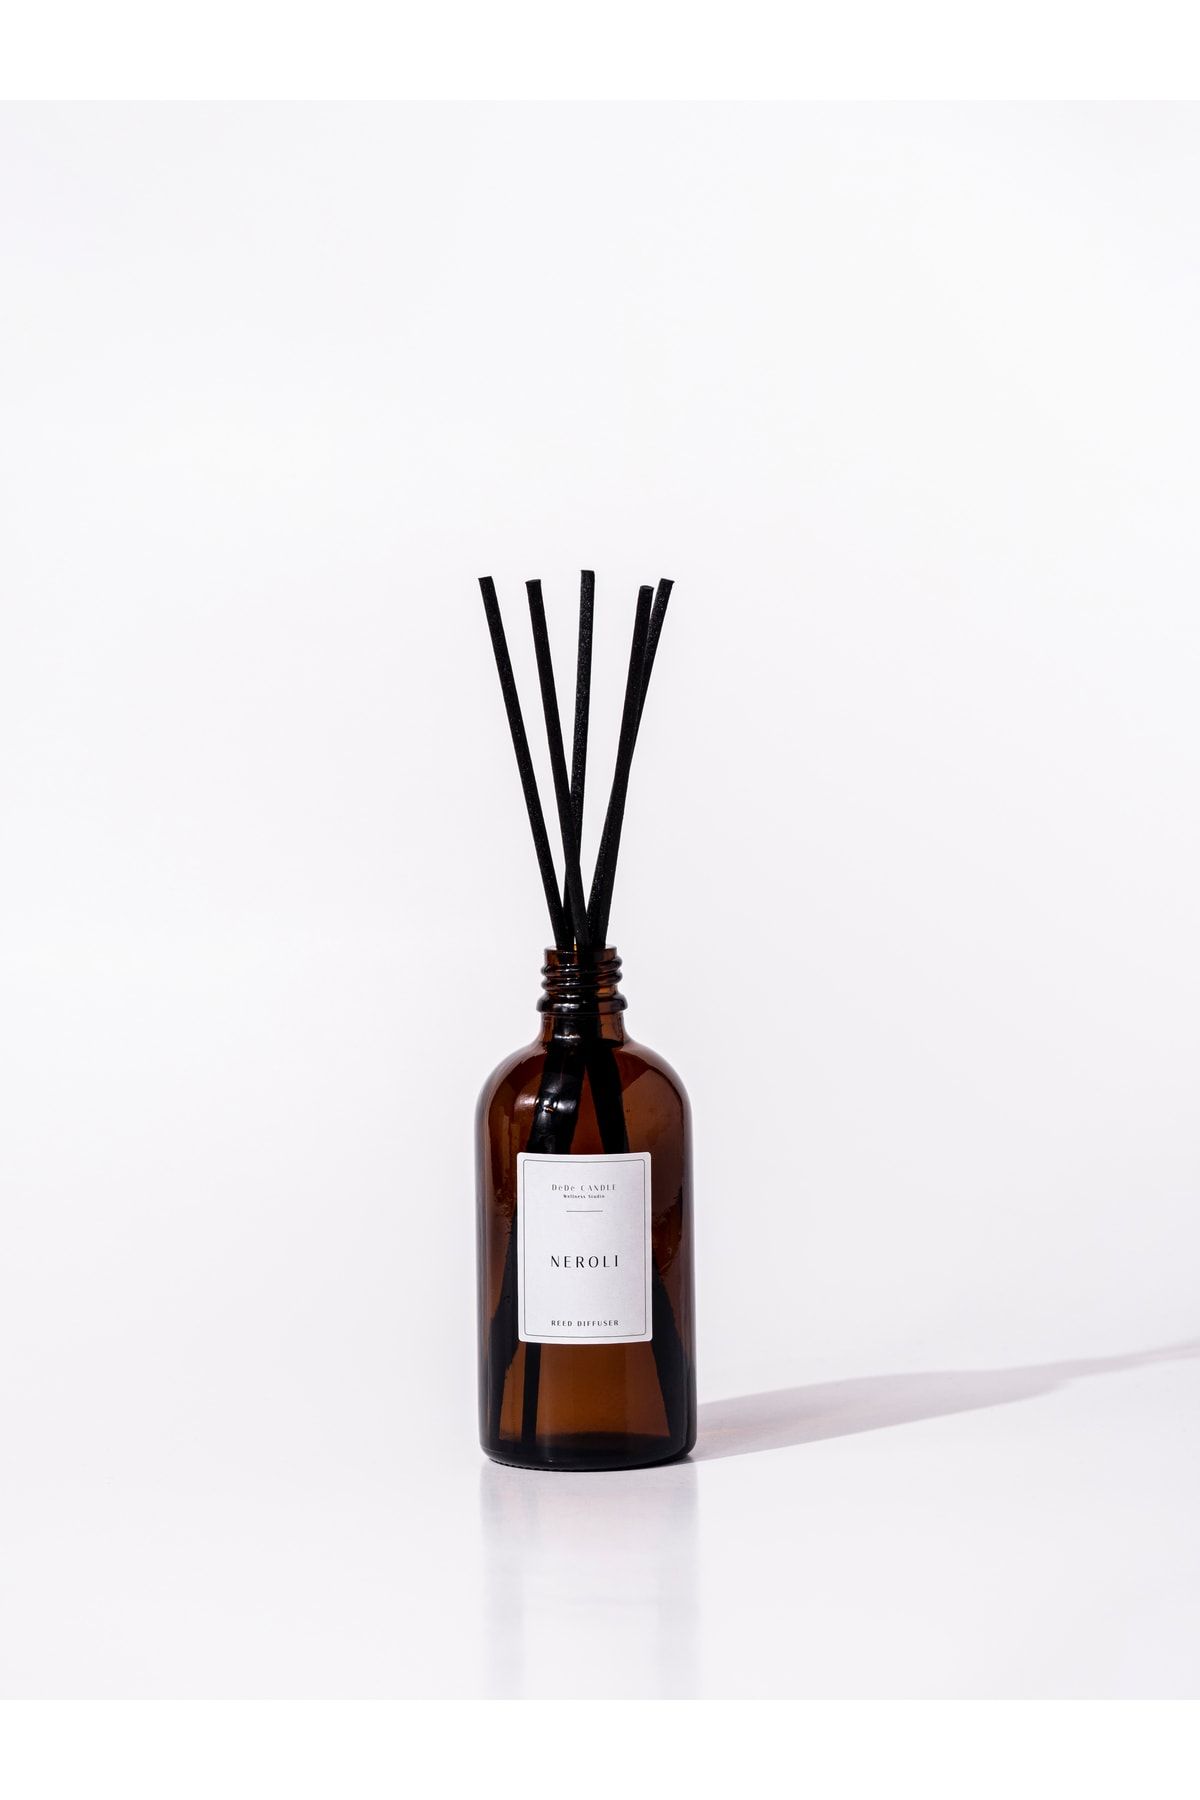 DeDe Candle & Wellness Studio Neroli Portakal Çiçeği Çubuklu Oda Kokusu - Difüzör Aromaterapik Diffuser